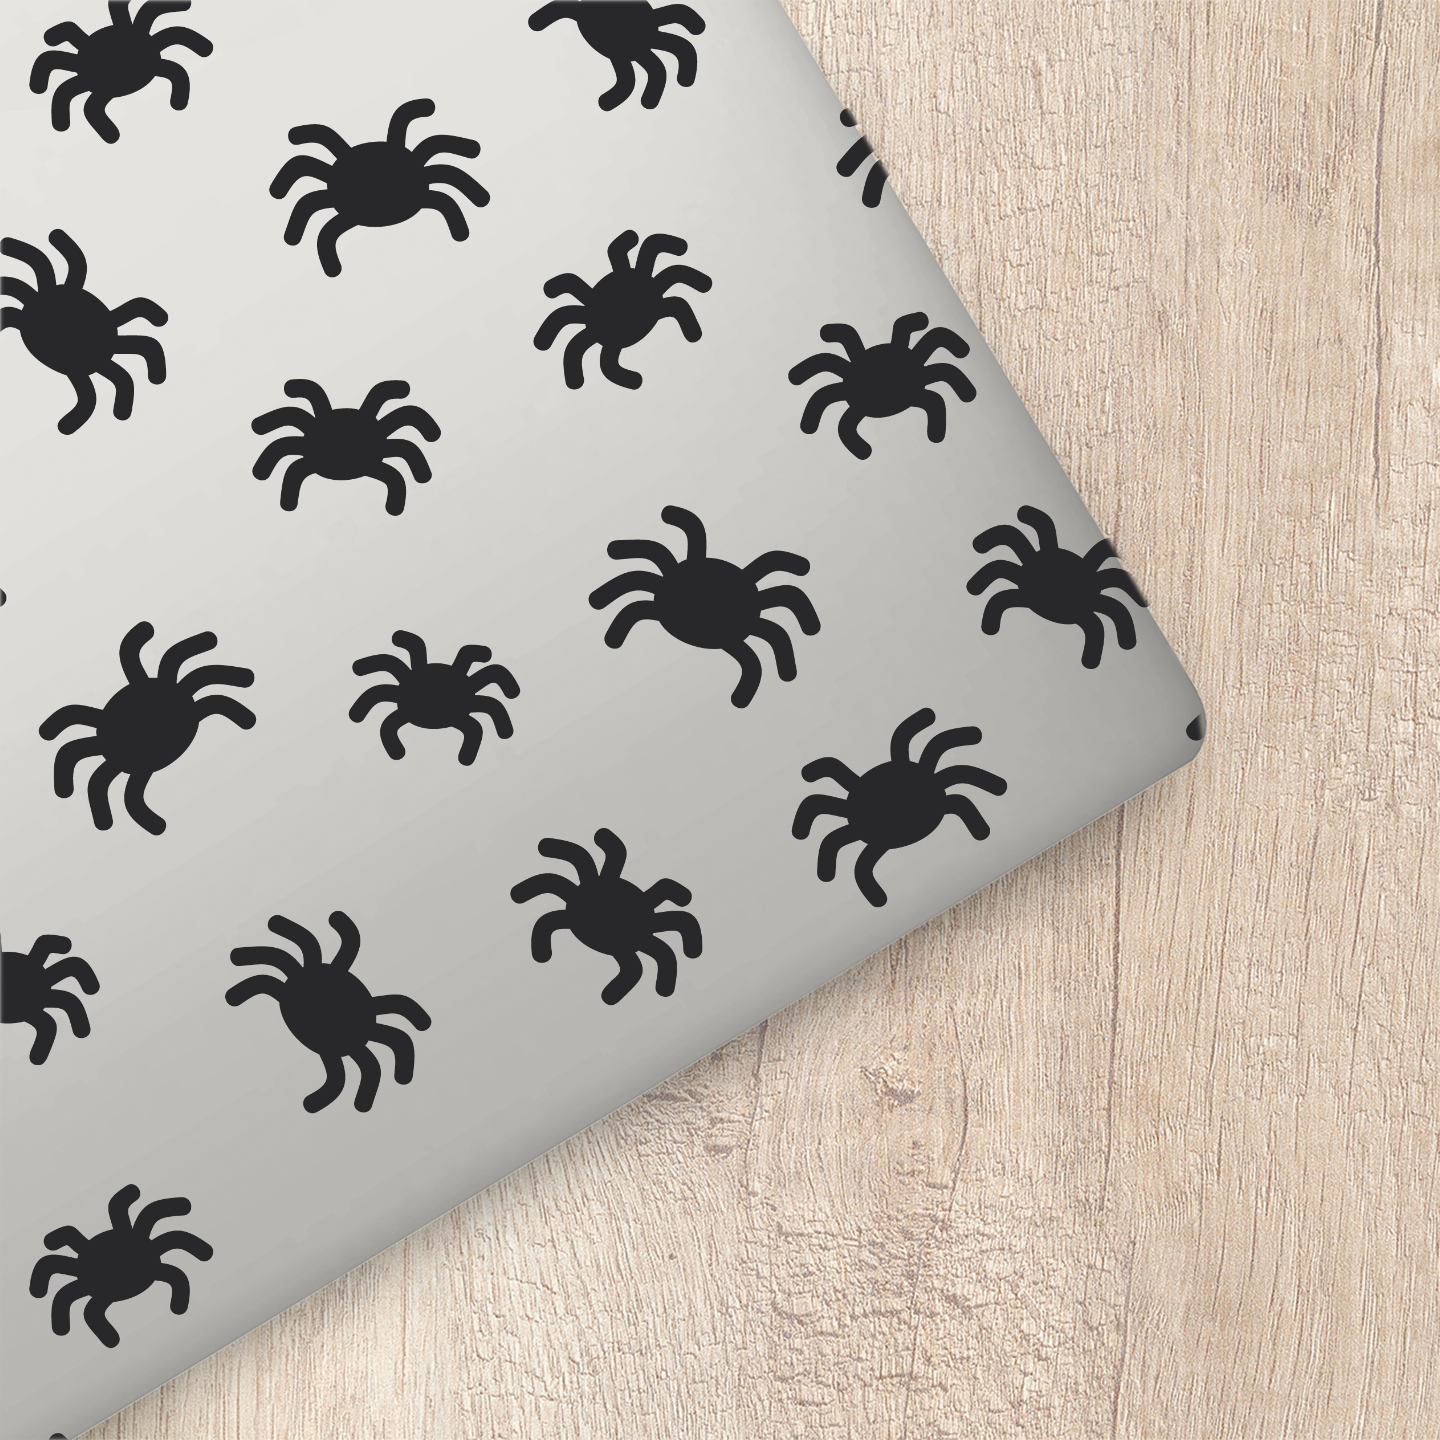 Spooky Spiders Sticker Sheet